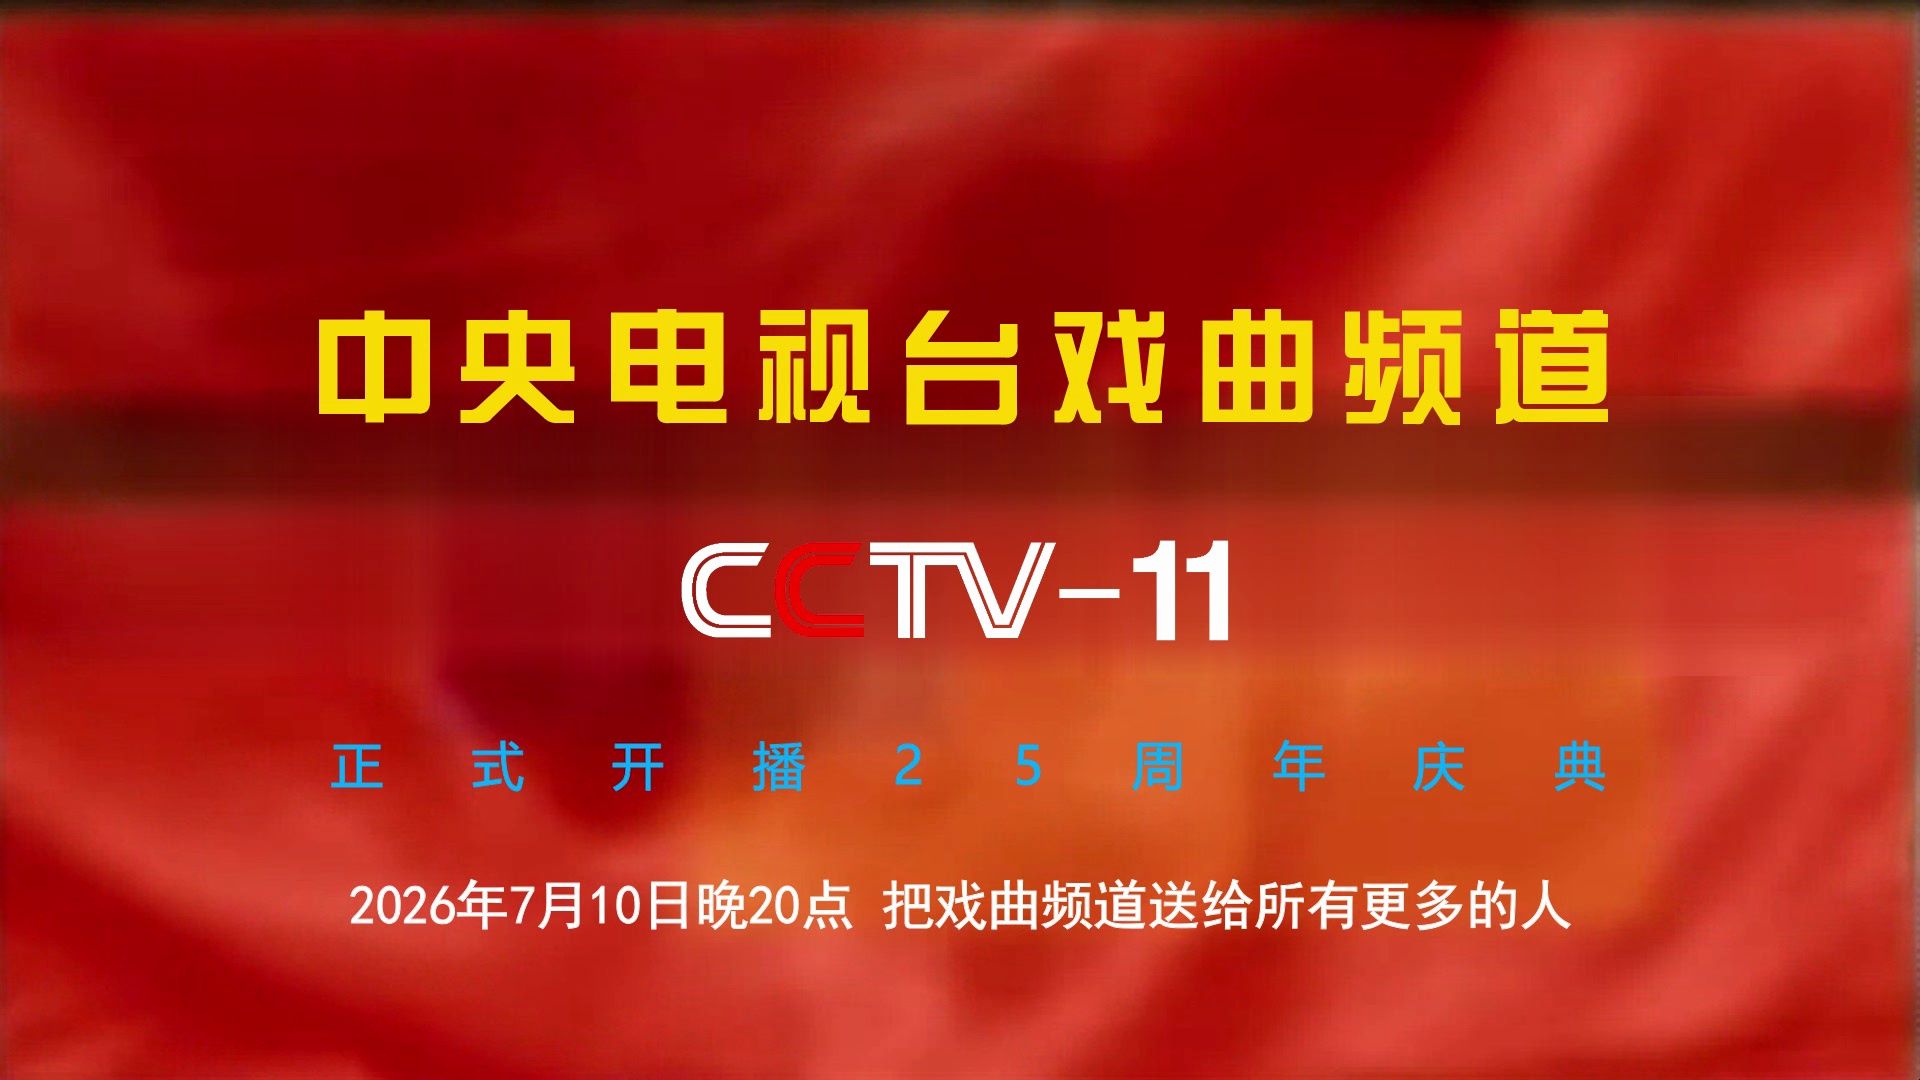 【cctv11】《中央电视台戏曲频道正式开播25周年庆典》宣传片